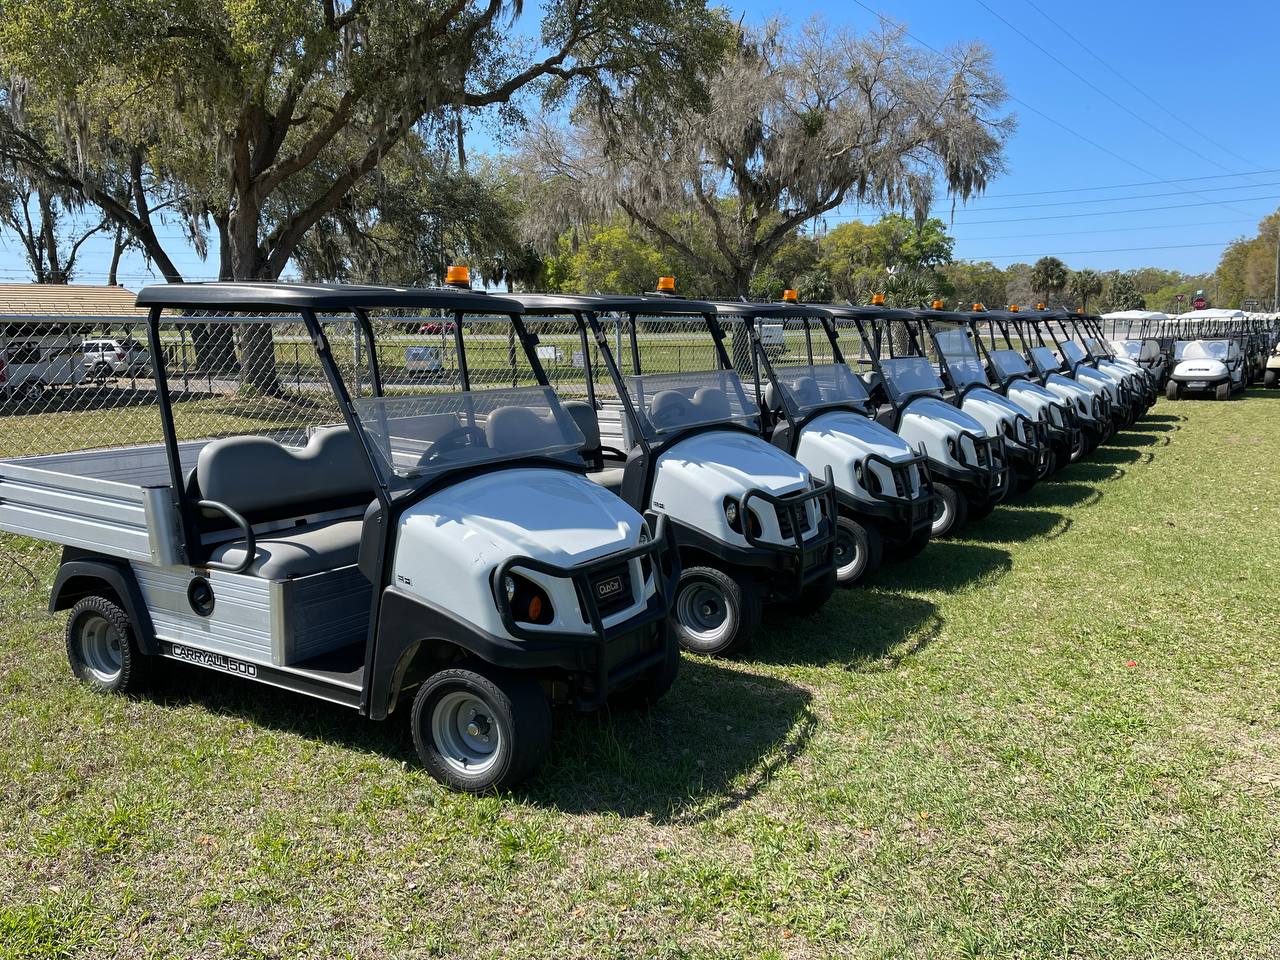 Golf cart fleets